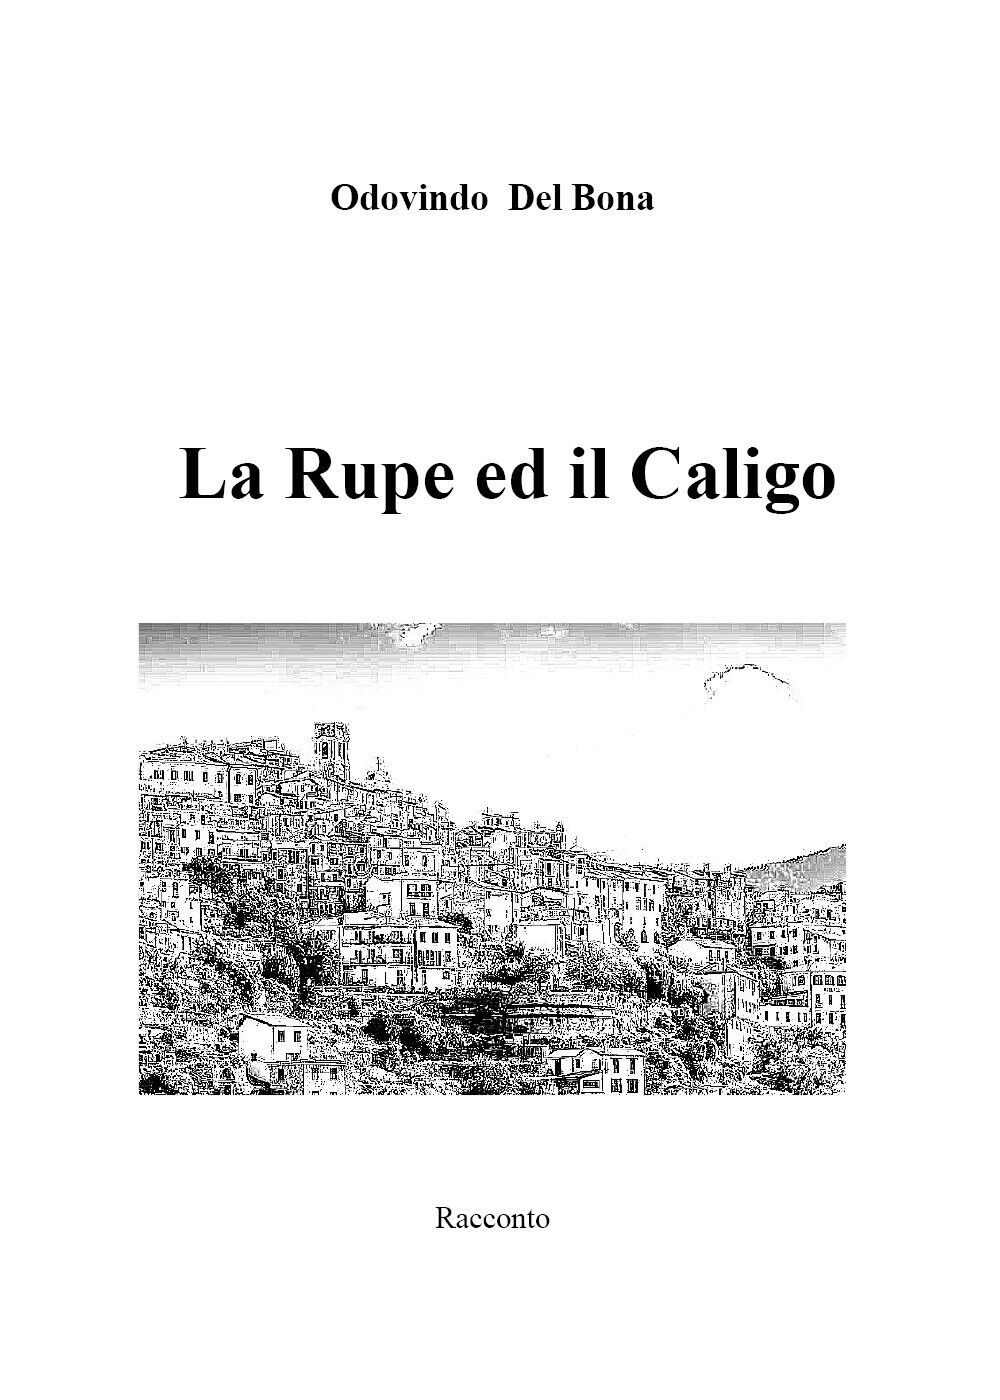 La Rupe ed il Caligo di Odovindo Del Bona,  2021,  Youcanprint